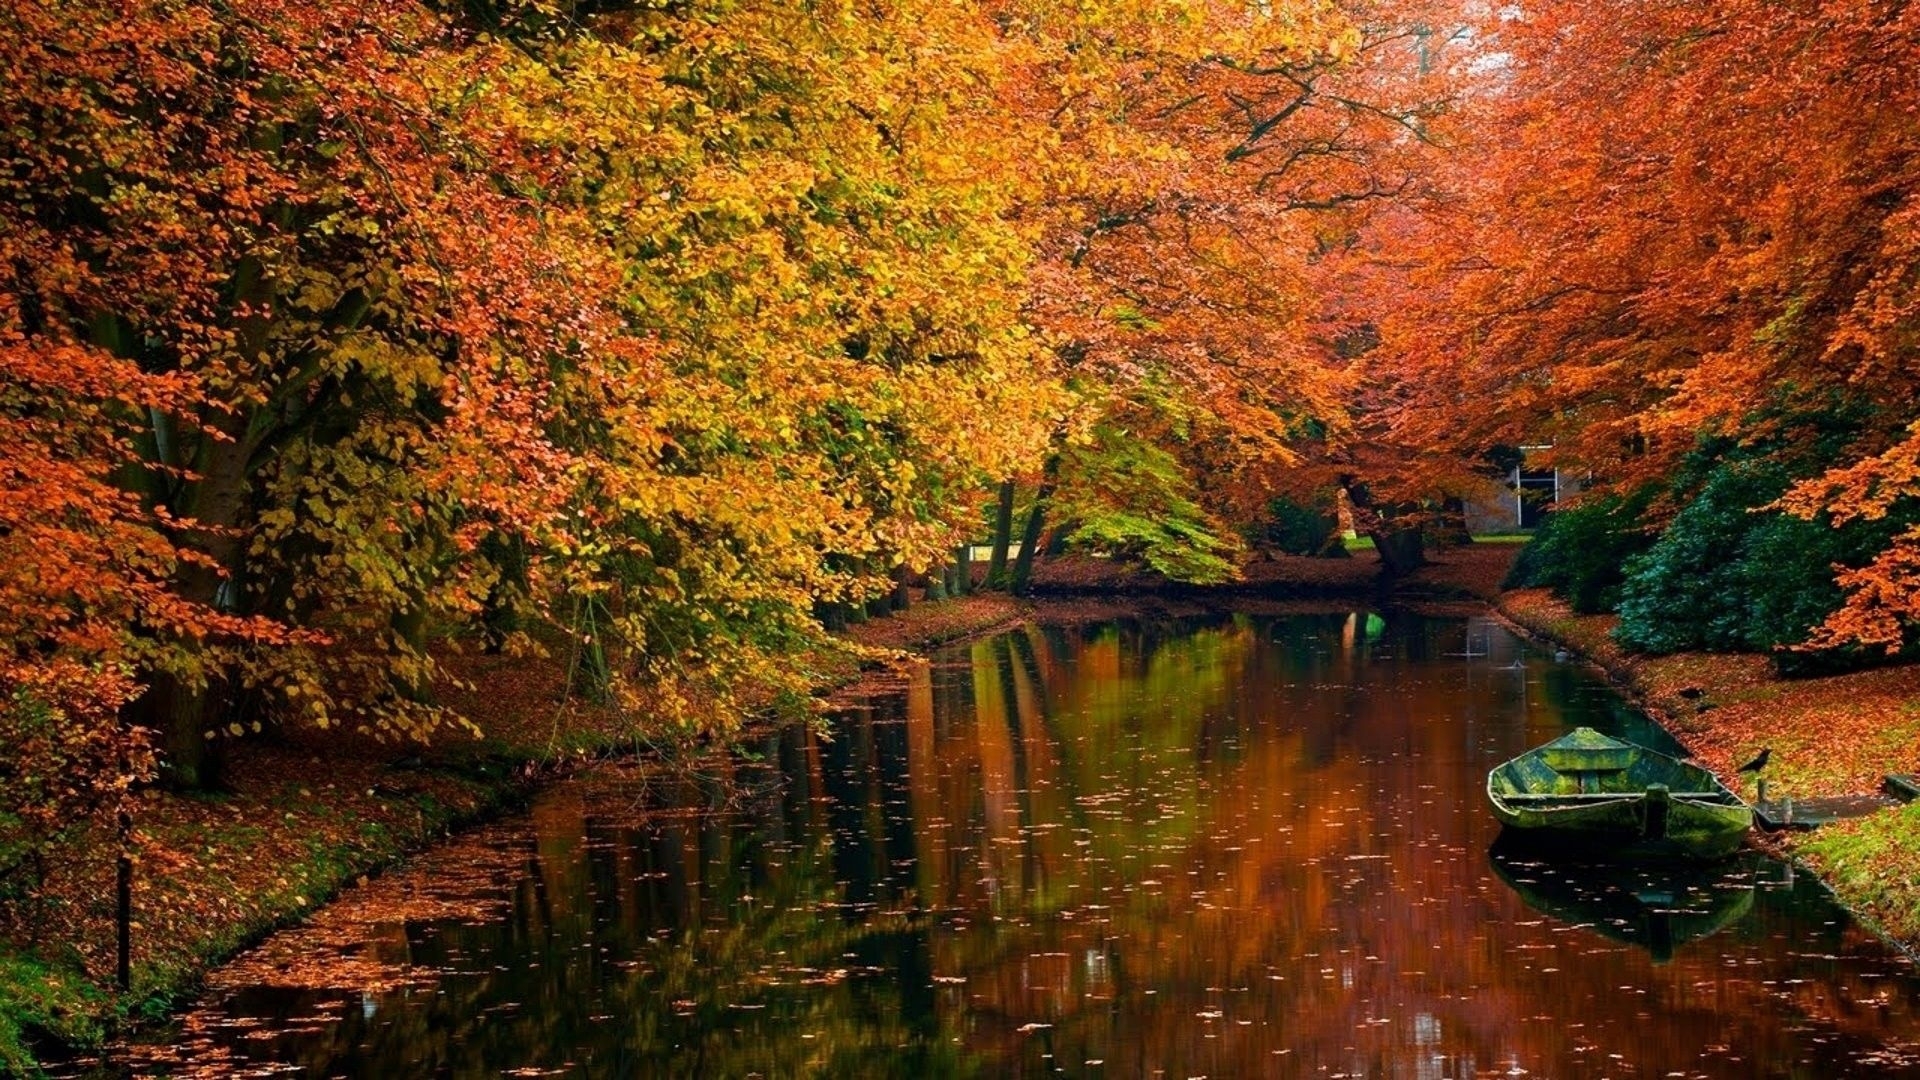 Fall scenes. Красивая осень. Осенний пейзаж. Осень картинки. Осенний парк.